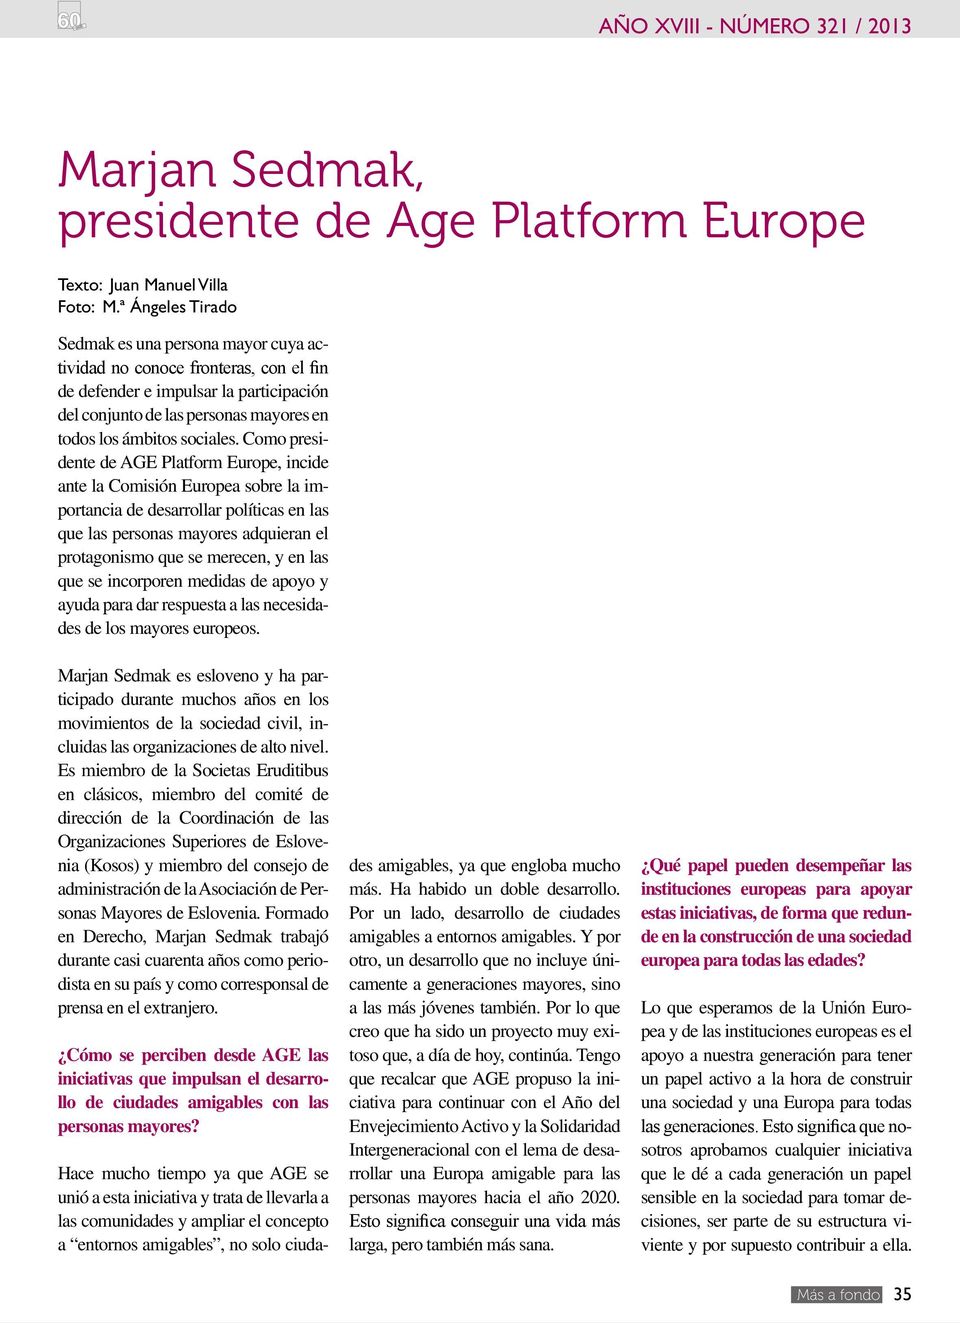 Como presidente de AGE Platform Europe, incide ante la Comisión Europea sobre la importancia de desarrollar políticas en las que las personas mayores adquieran el protagonismo que se merecen, y en